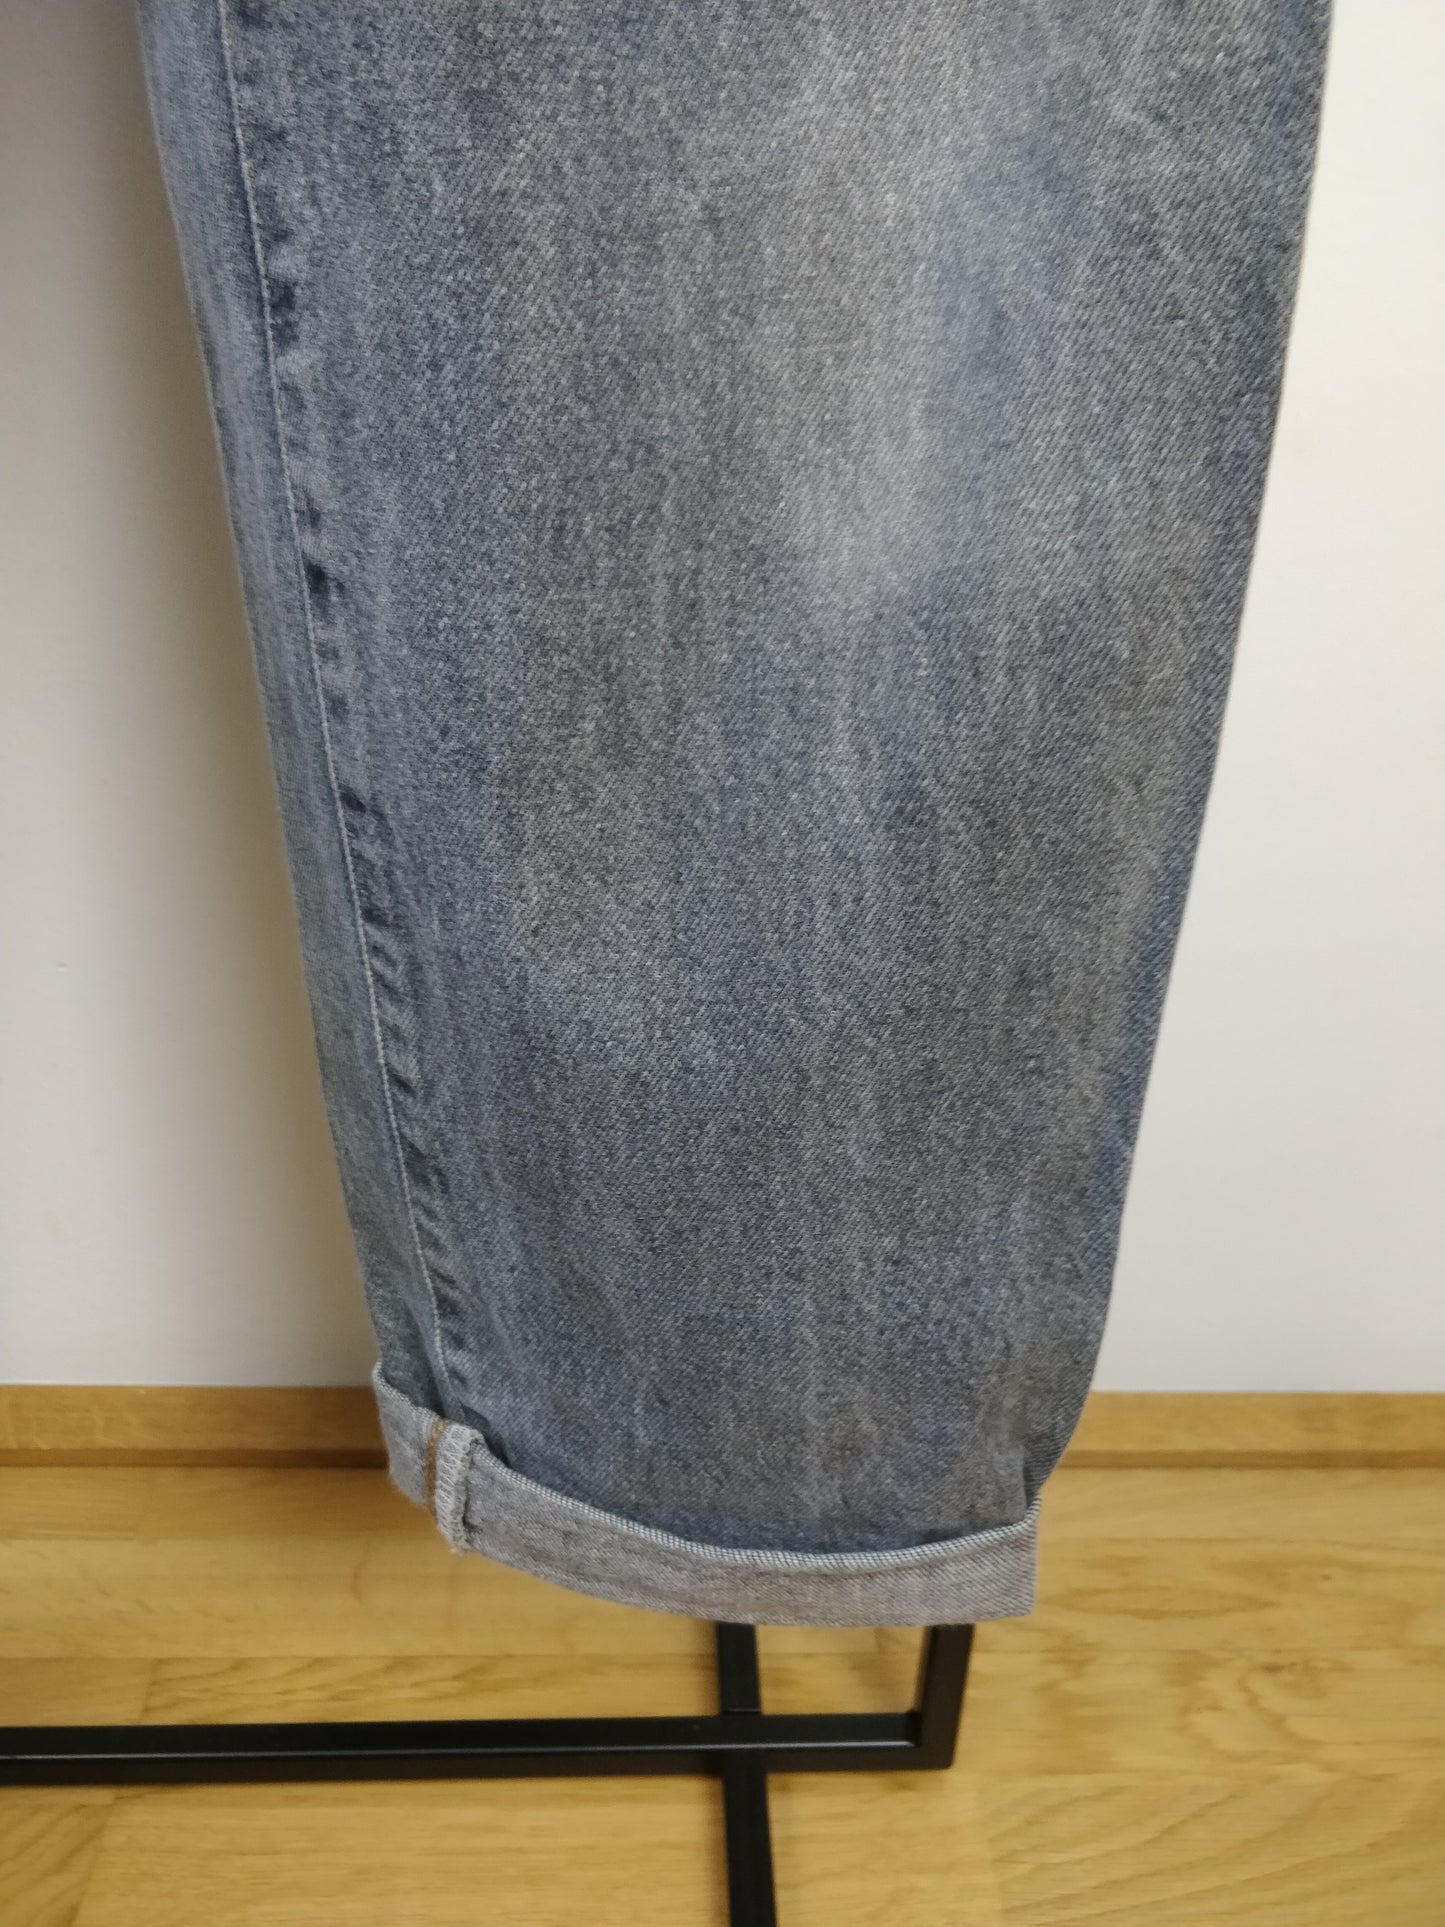 Vintage worn grey washout denim pant